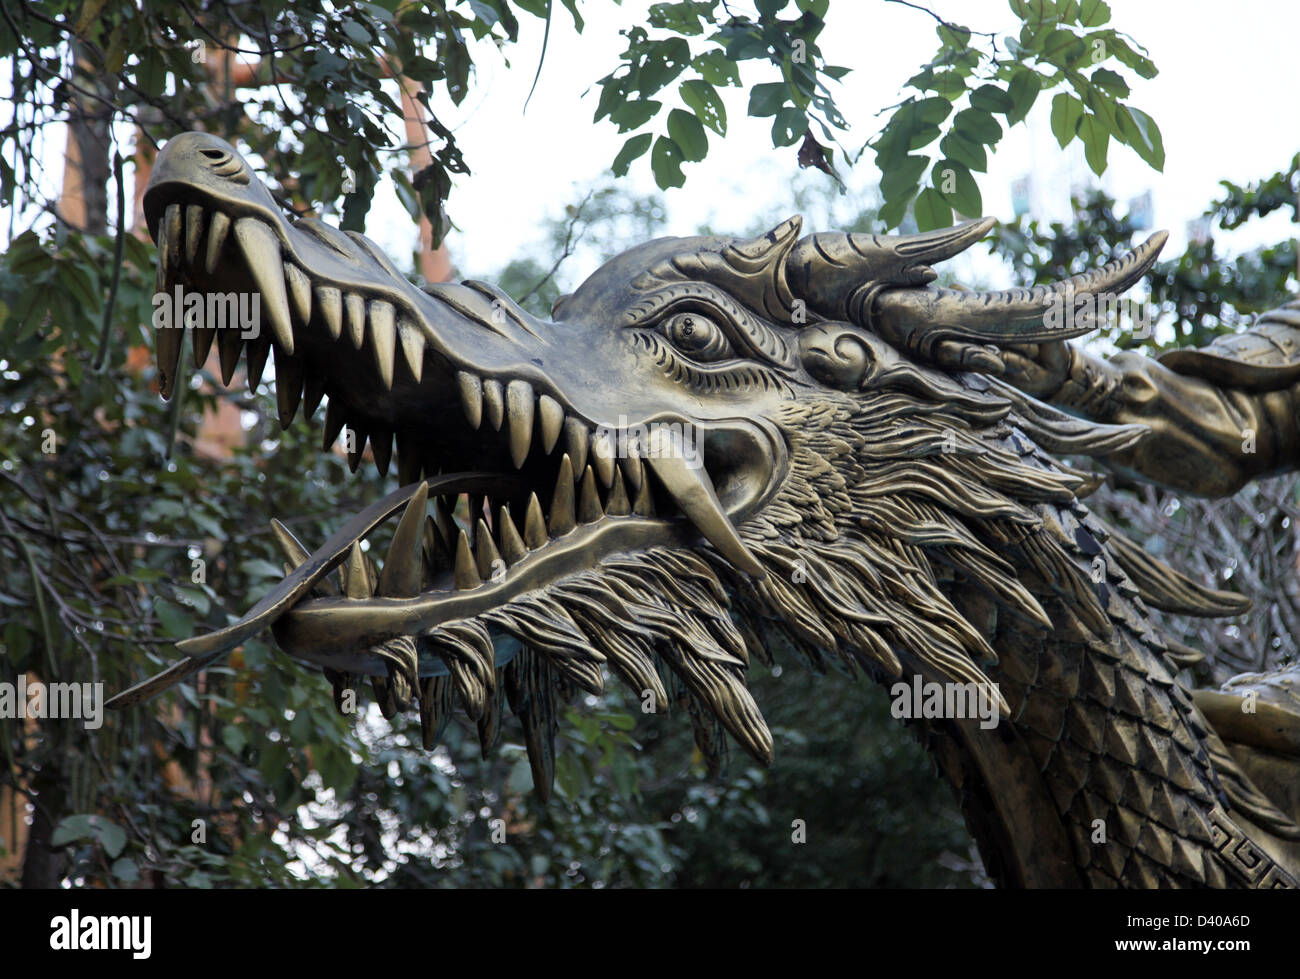 Es ist ein Foto von den Kopf eines Drachen oder Tier. Wir können sehen, ist es eine Statue eines Drachen in einen Vergnügungspark Stockfoto